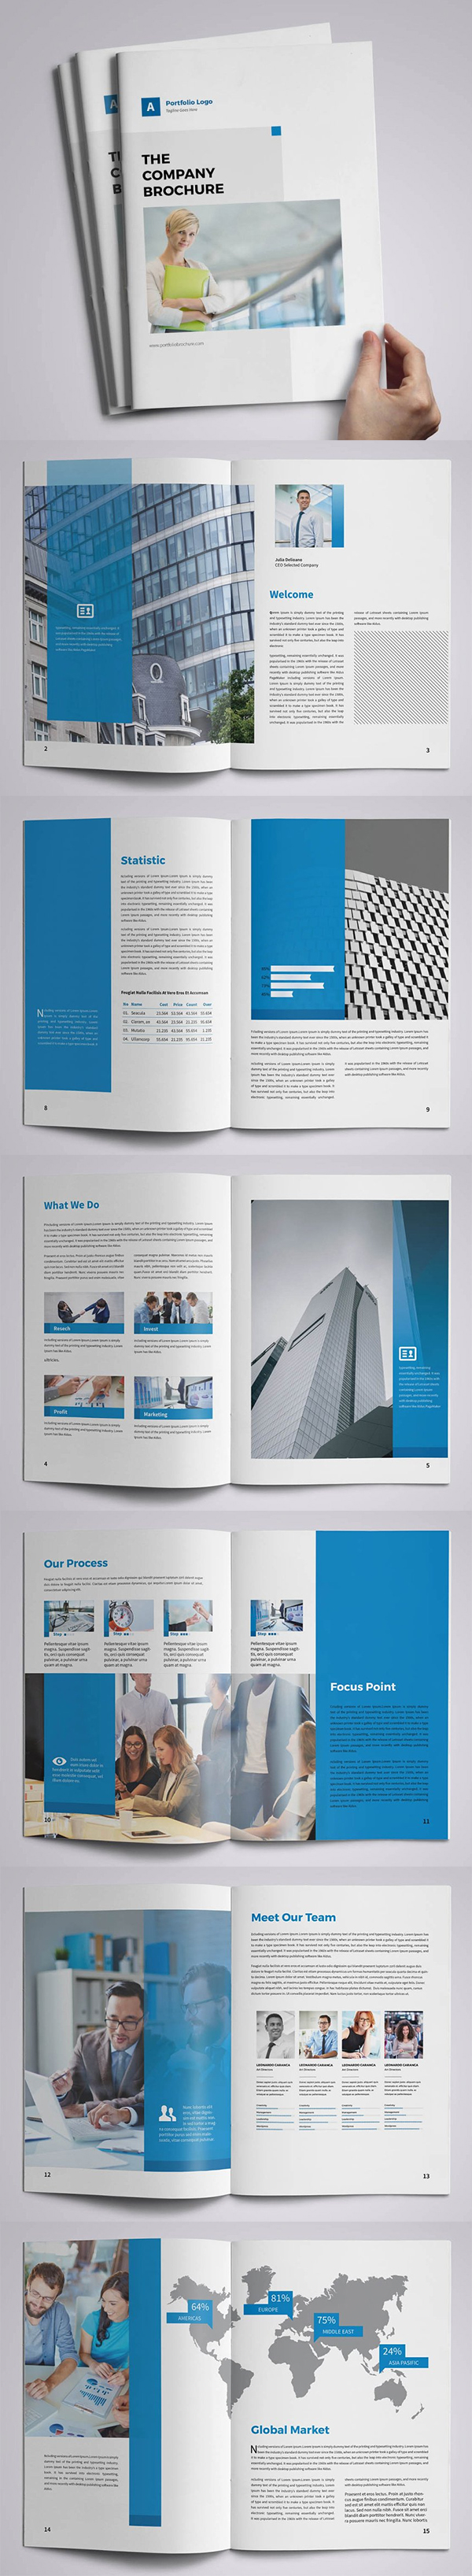 Corporate Business Brochure Template Design